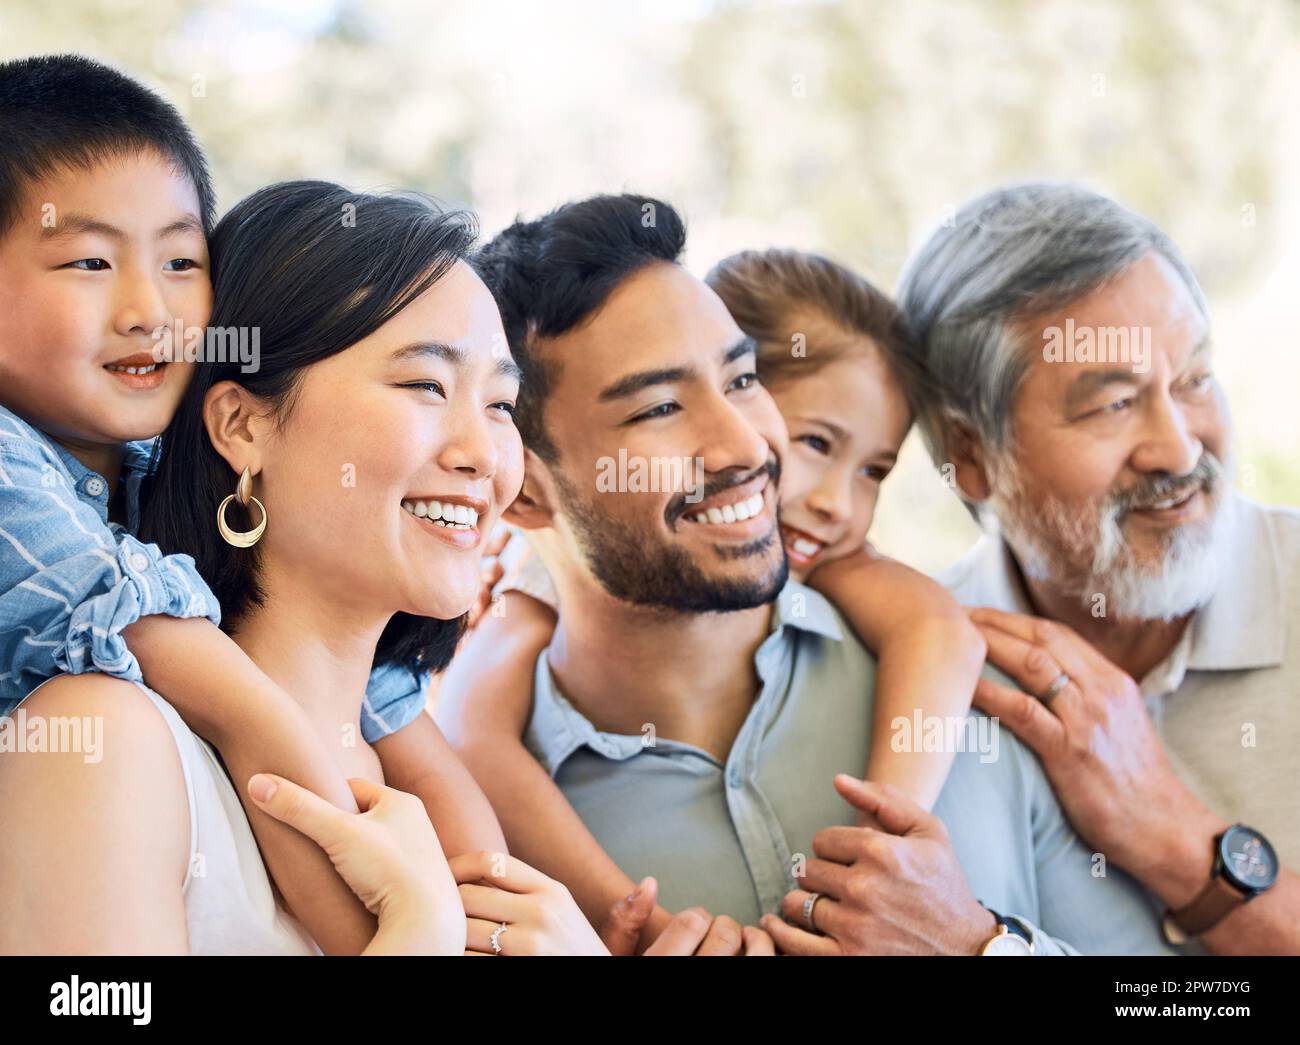 Die Zeit mit der Familie ist Gold wert. Eine glückliche Familie, die Zeit zusammen in einem Garten verbringt Stockfoto